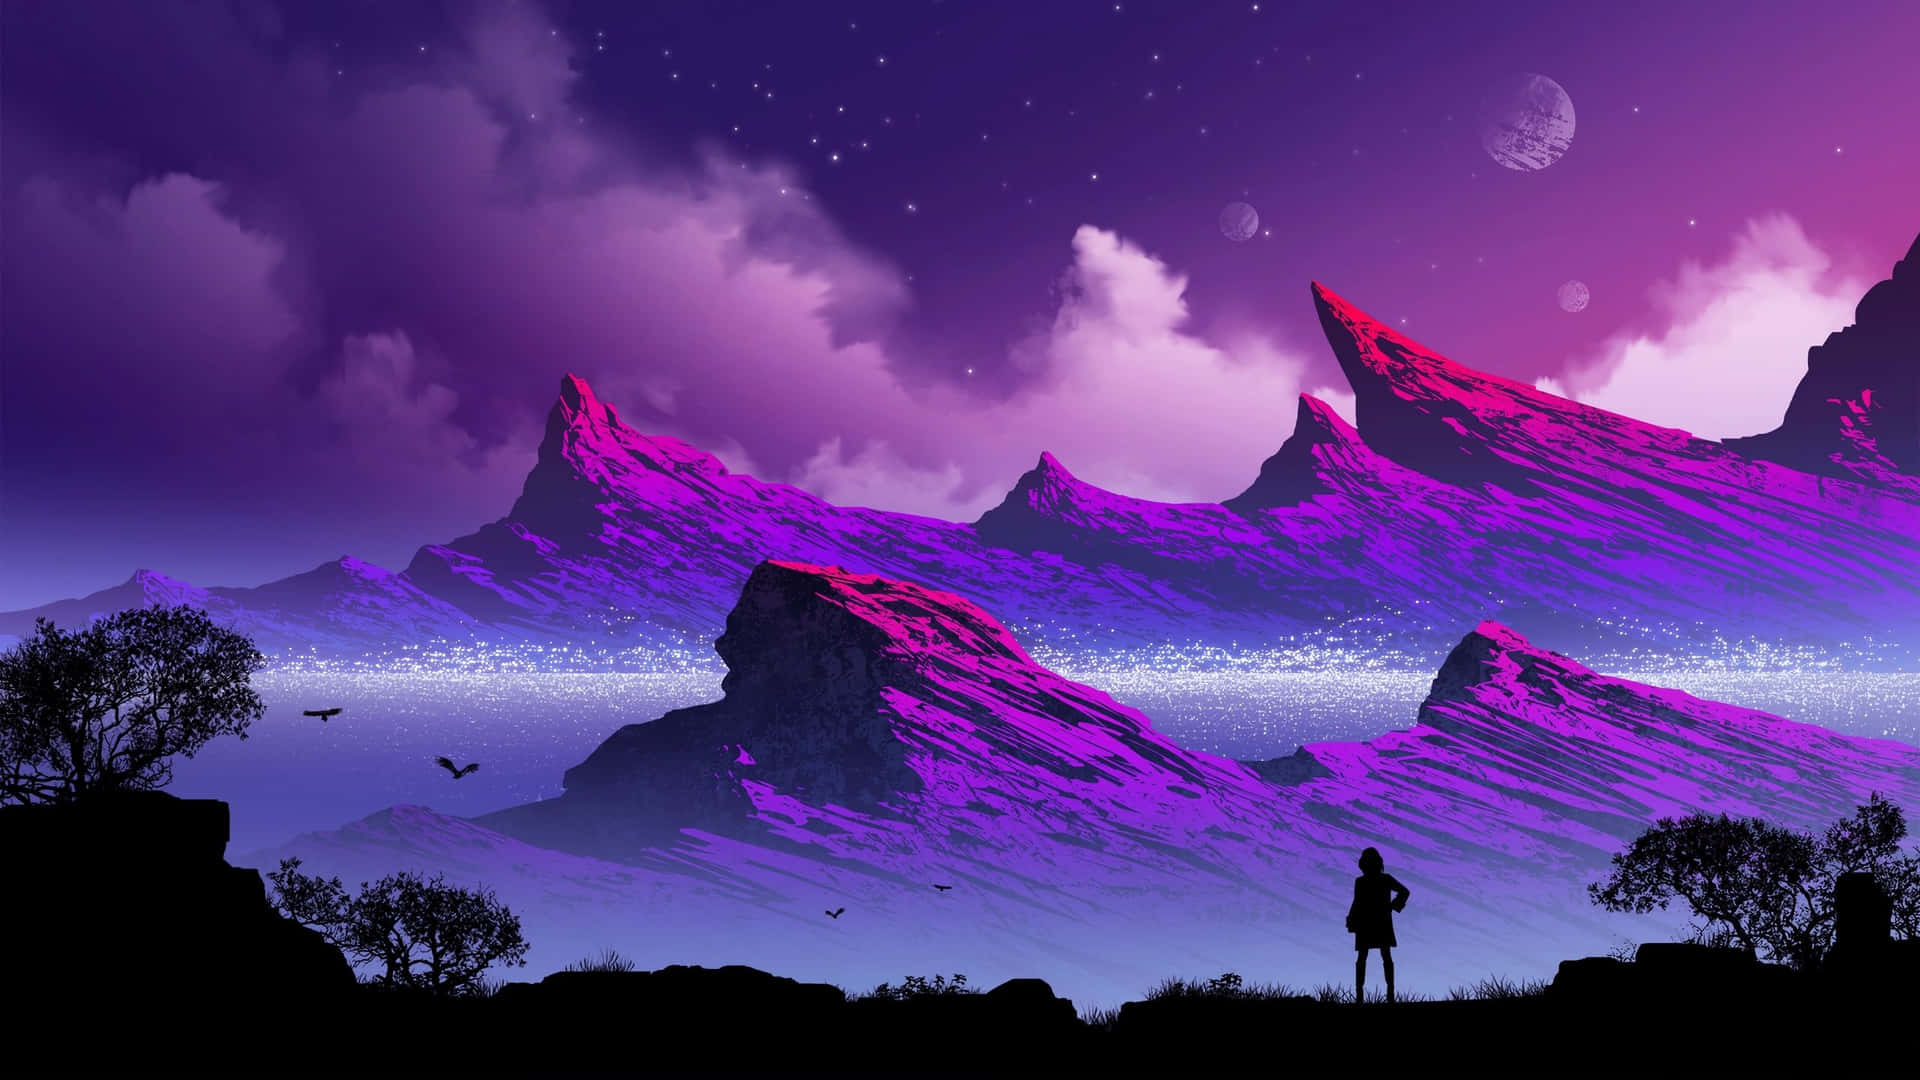 1440p Travel Purple Landscape Background